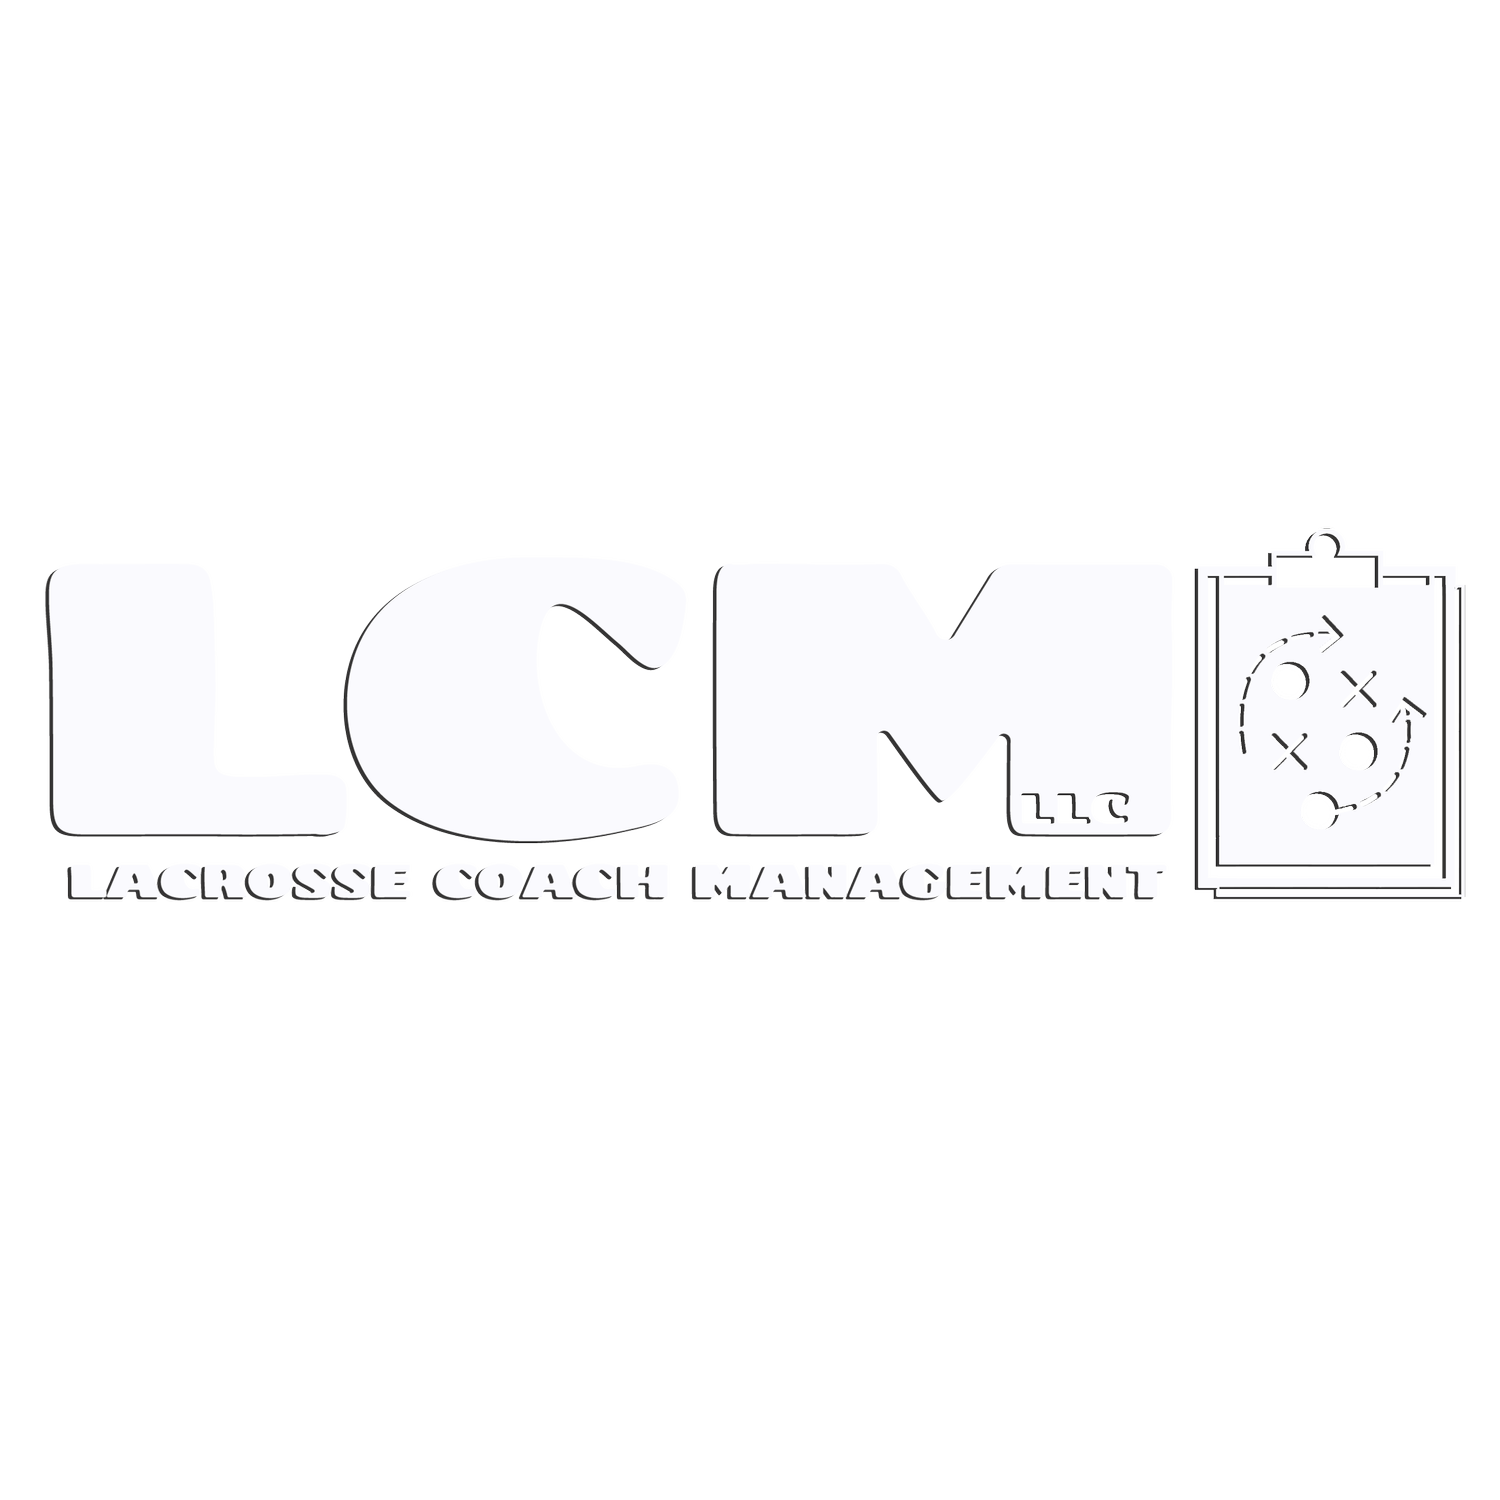 Lacrosse Coach Management